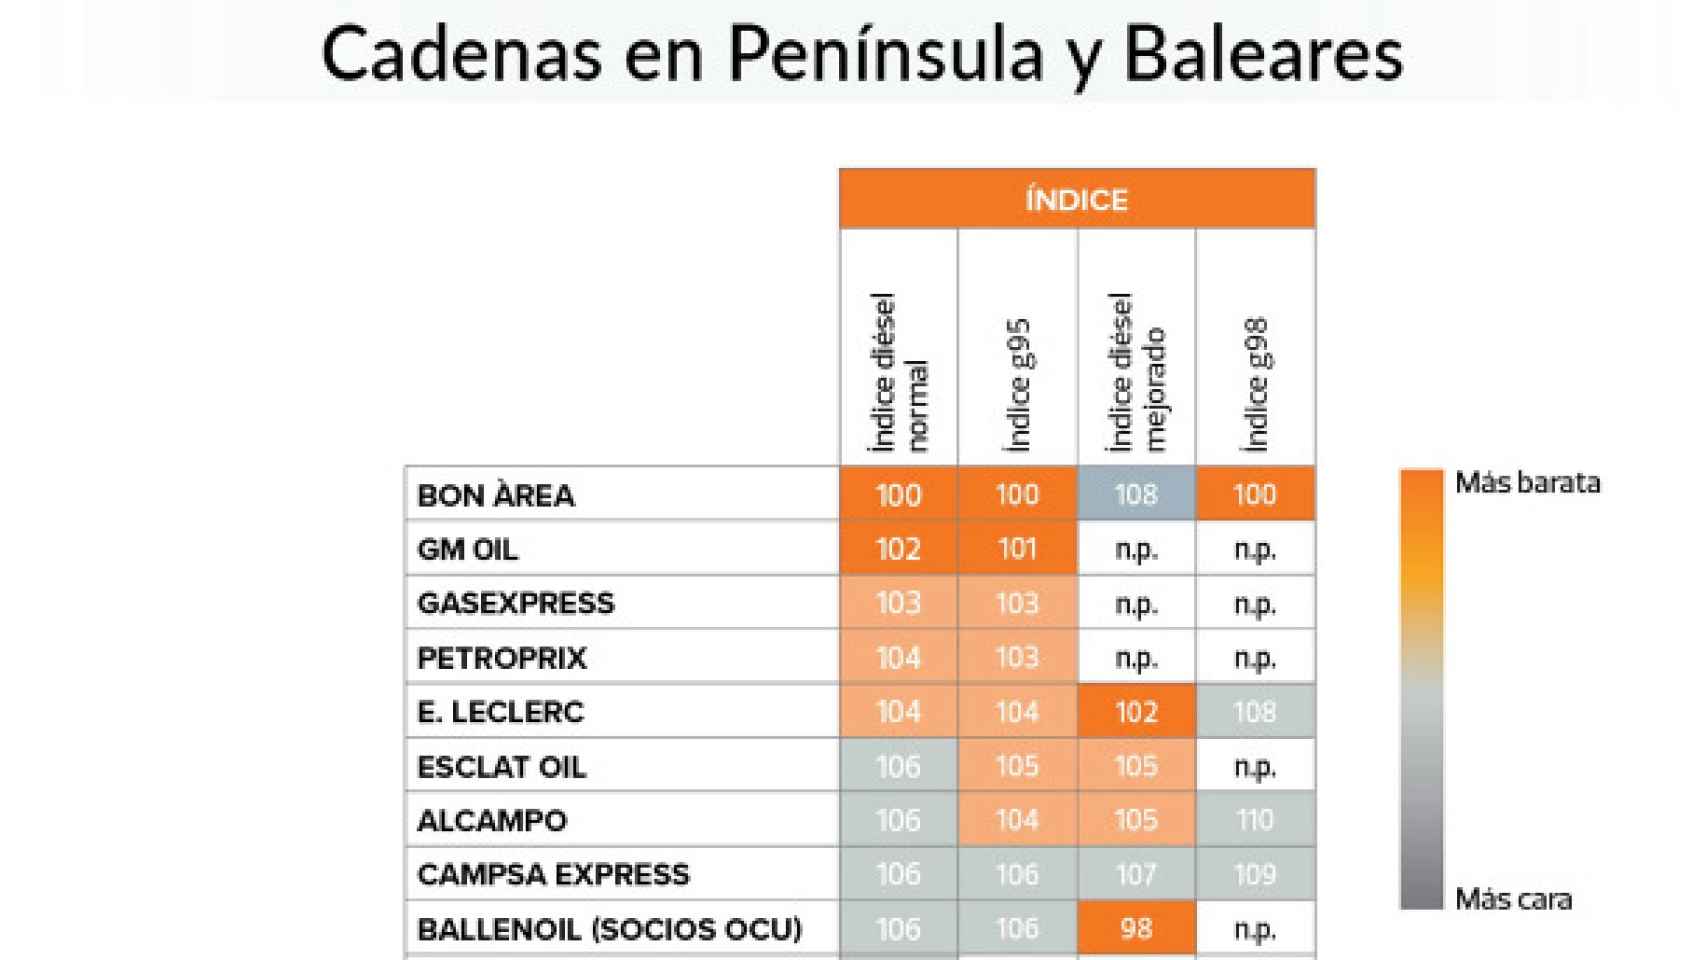 Índices por cadenas en la Península y Baleares, OCU